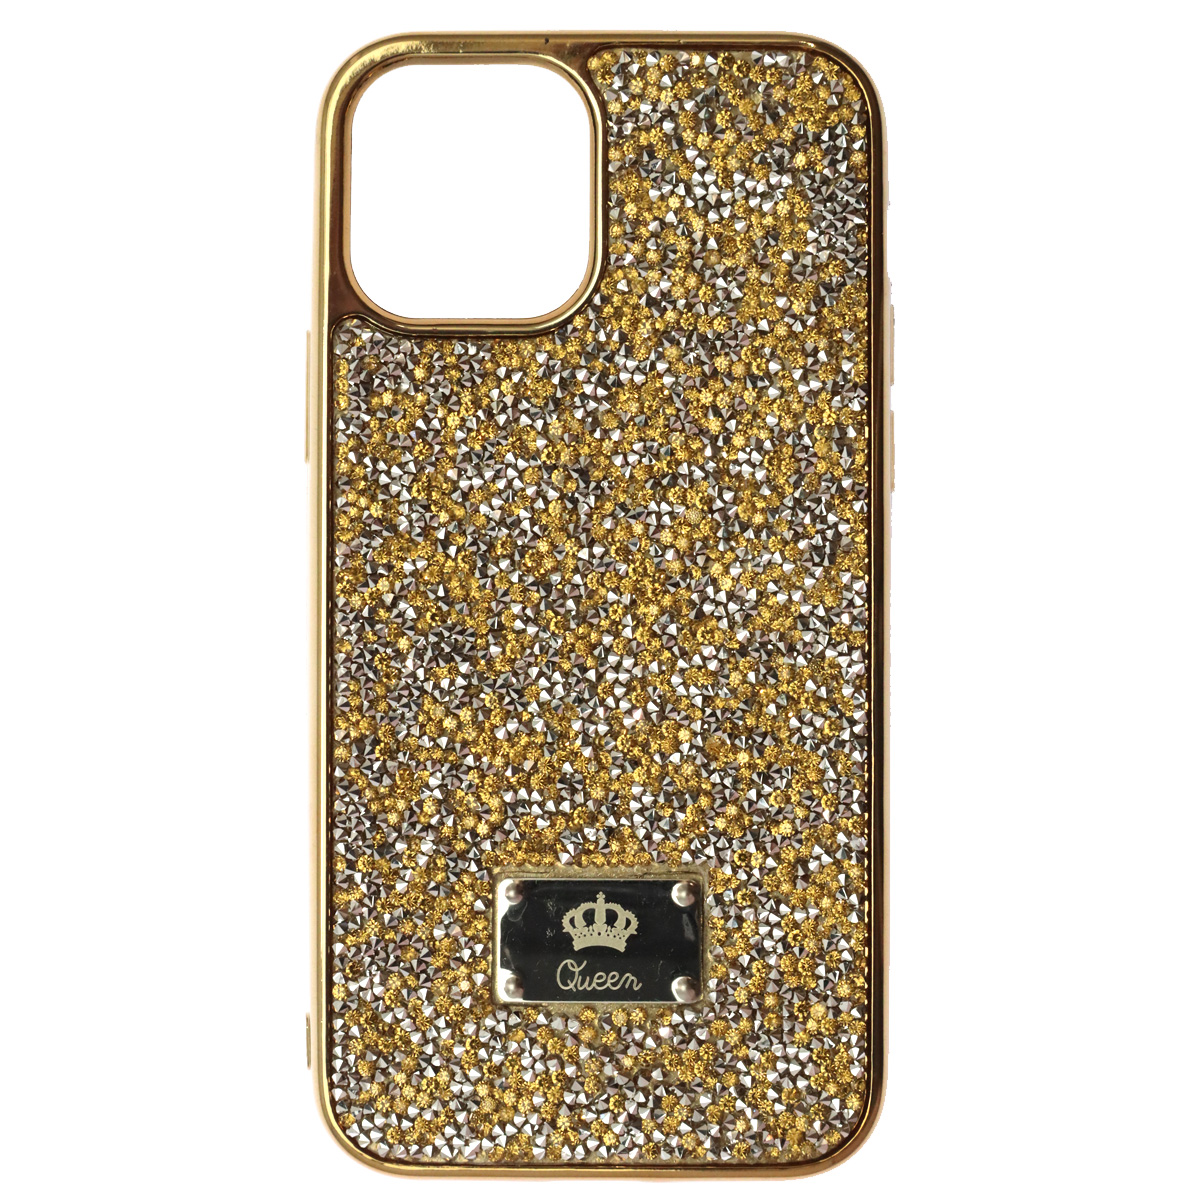 Чехол накладка Queen для APPLE iPhone 12, iPhone 12 Pro, силикон, стразы, цвет золотистый